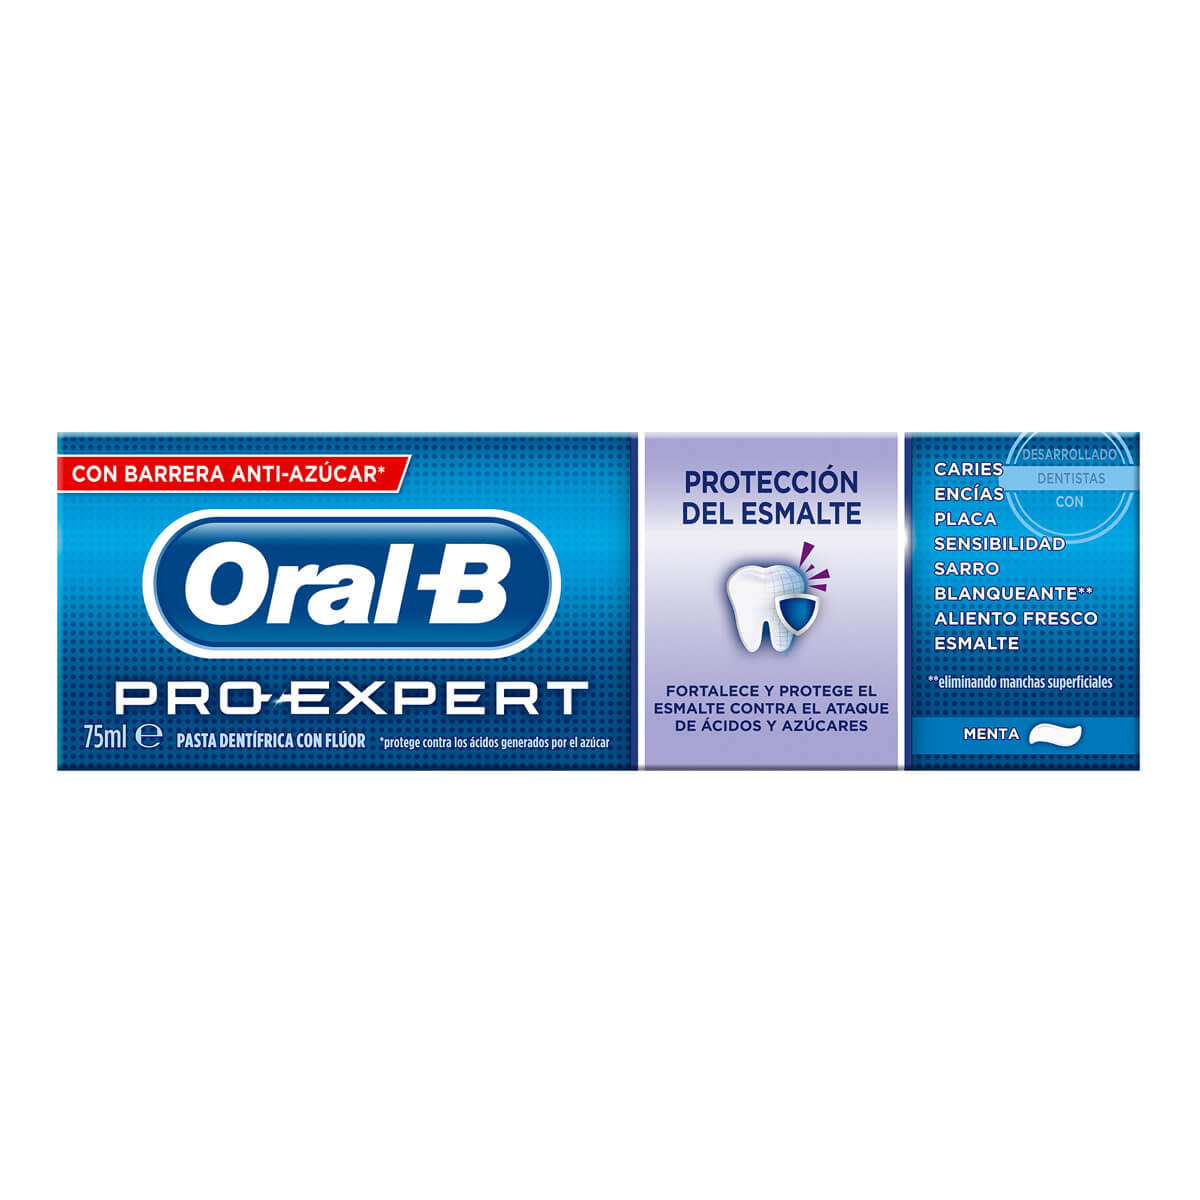 Oral-B Pro-Expert Protección Esmalte undefined